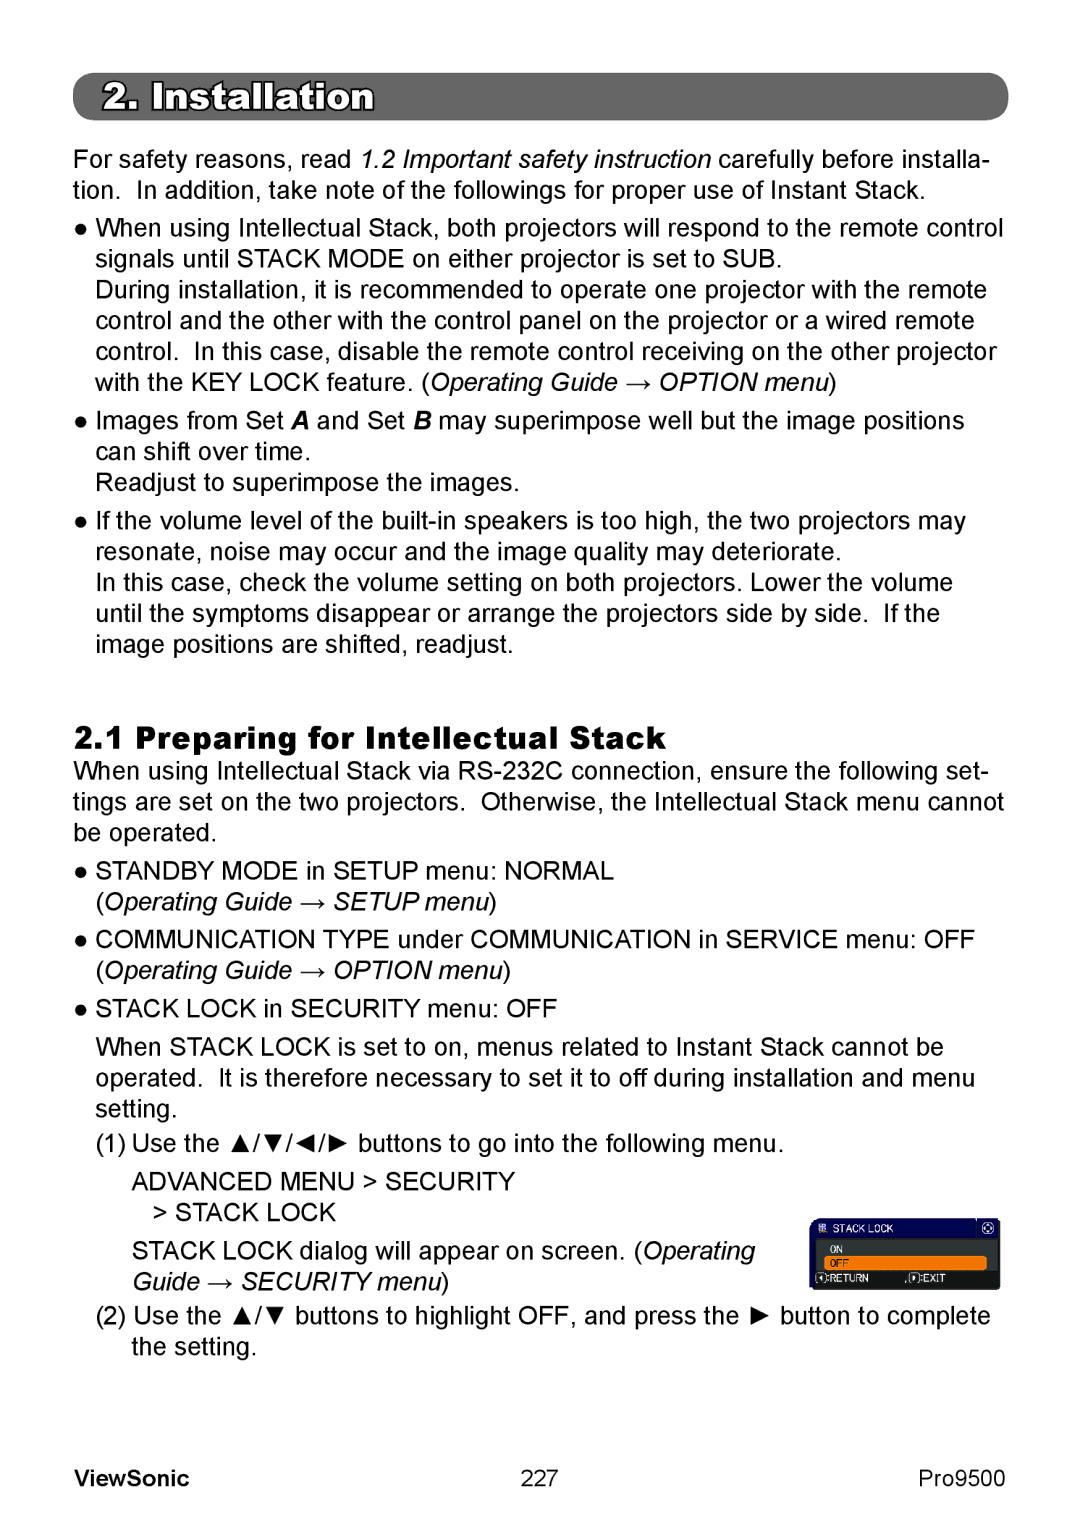 ViewSonic VS13835 warranty Preparing for Intellectual Stack, 227 